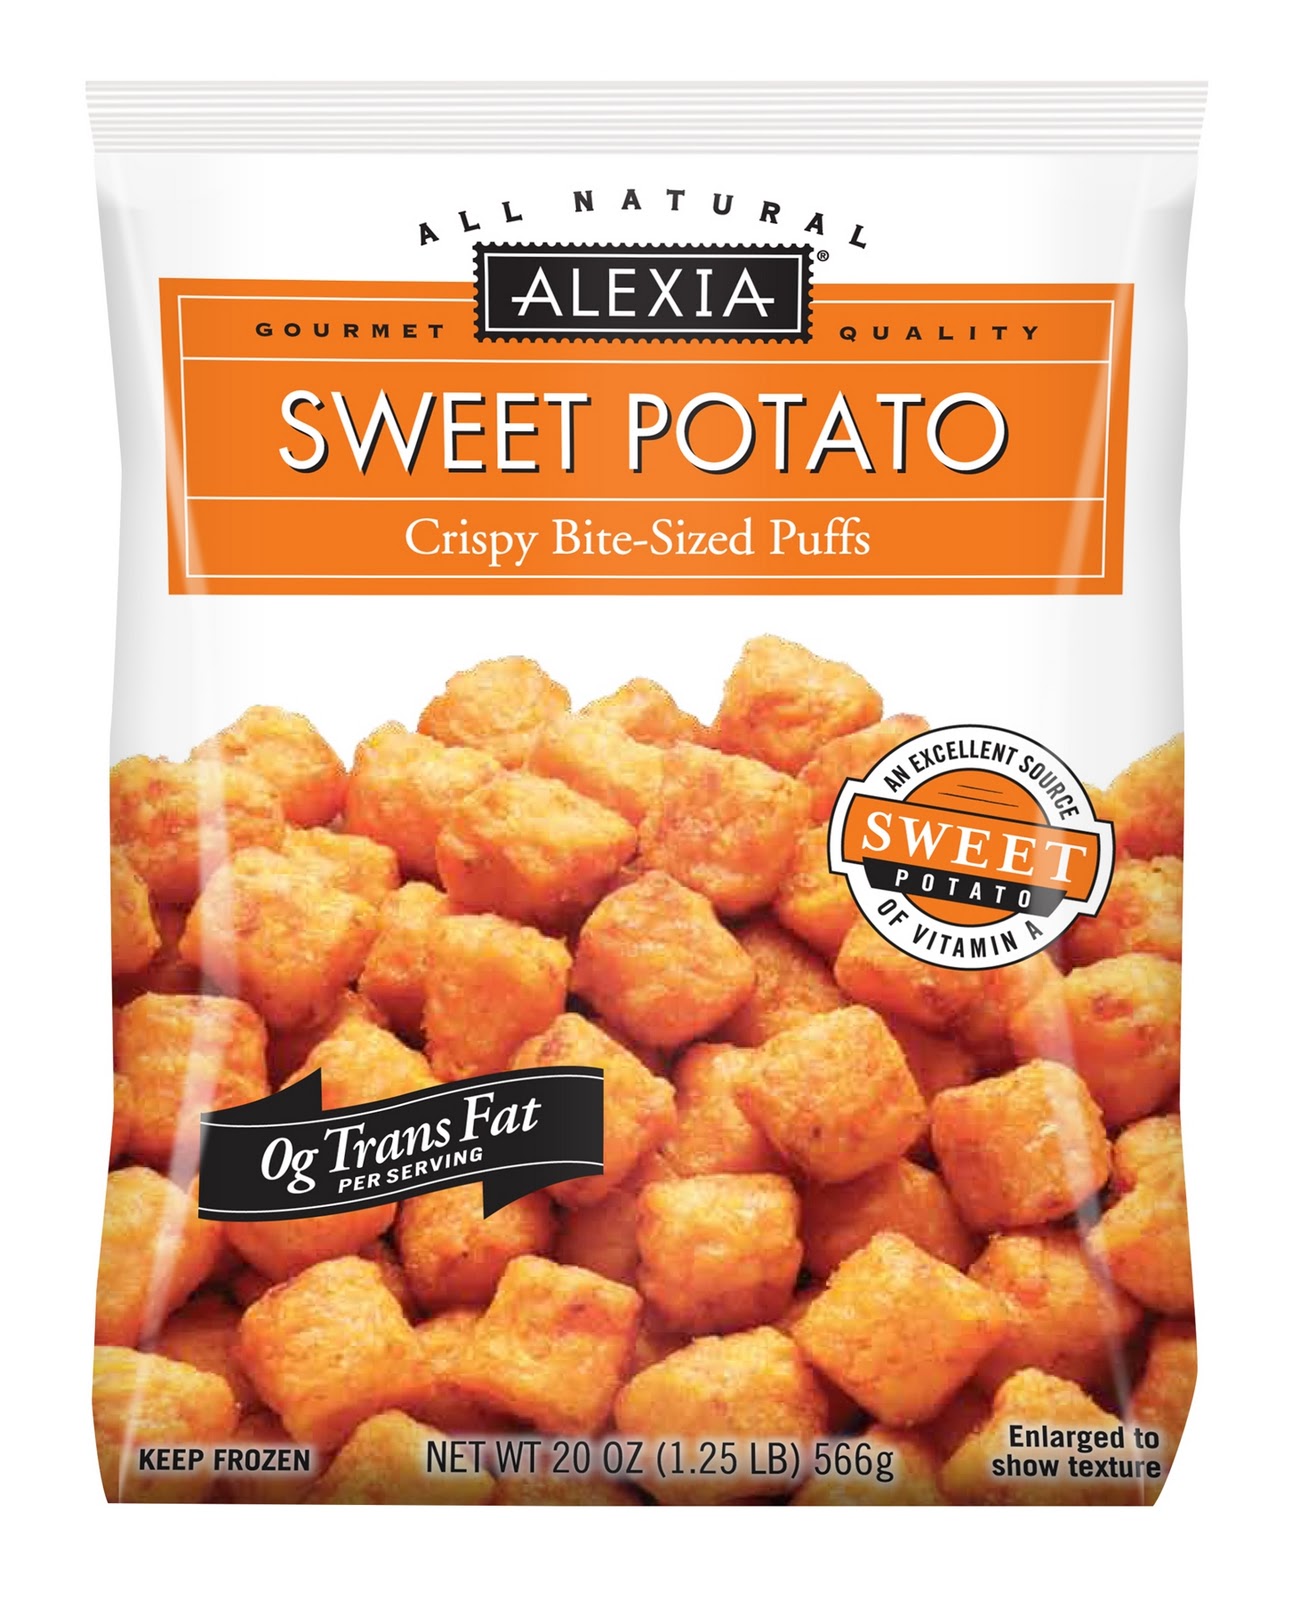 Café Cyan Review Alexia Sweet Potato Puffs.